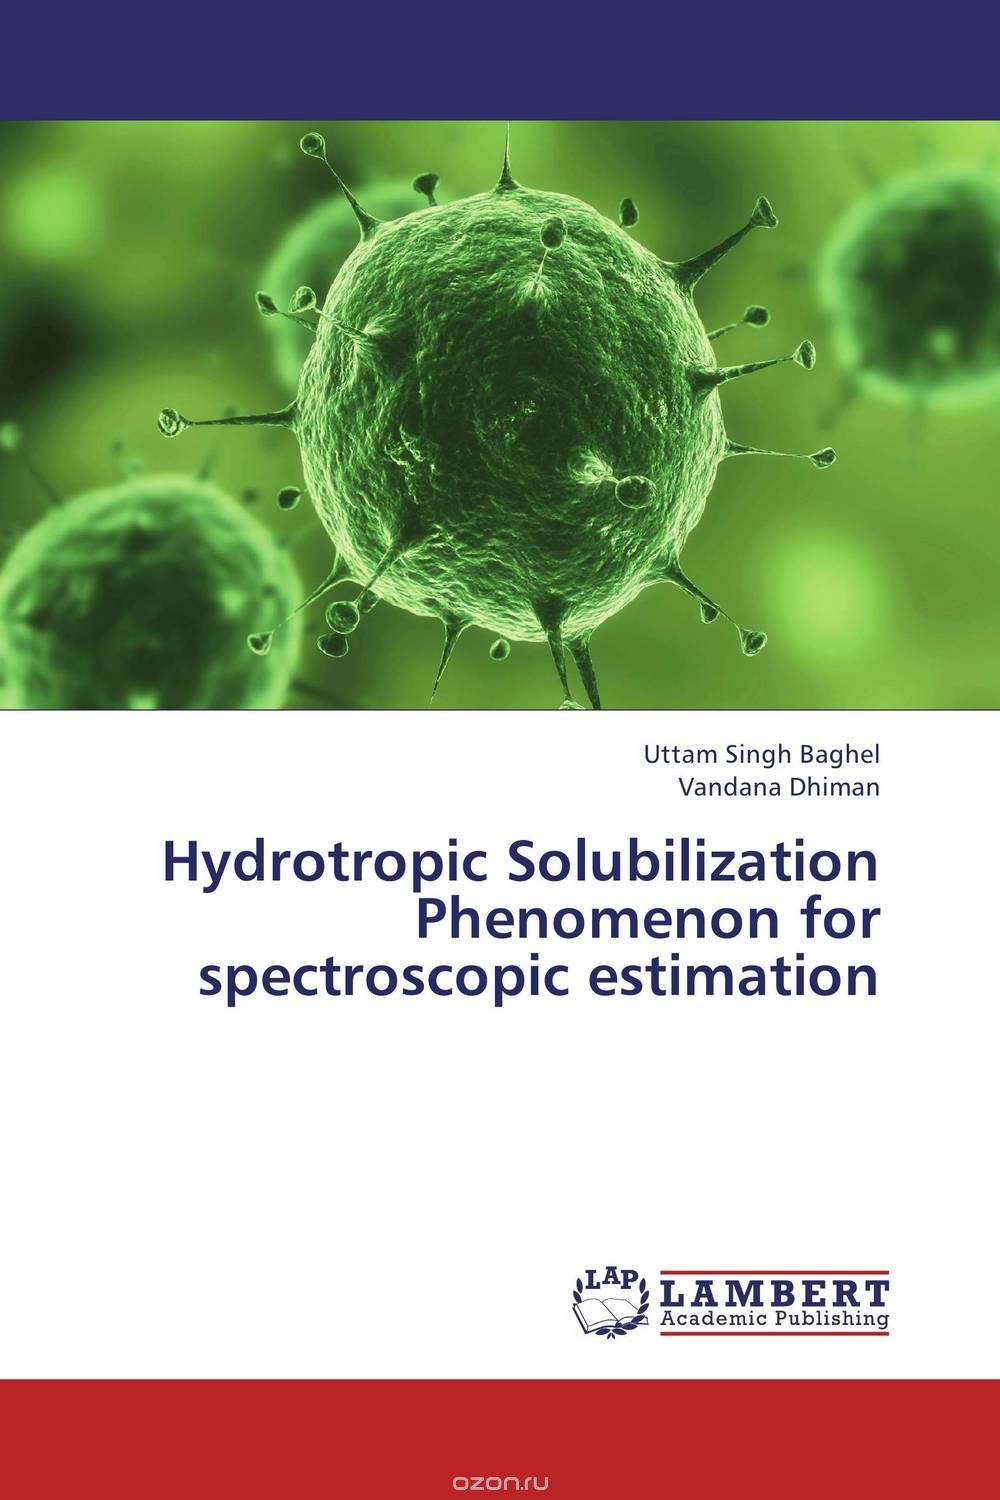 Скачать книгу "Hydrotropic Solubilization Phenomenon for spectroscopic estimation"